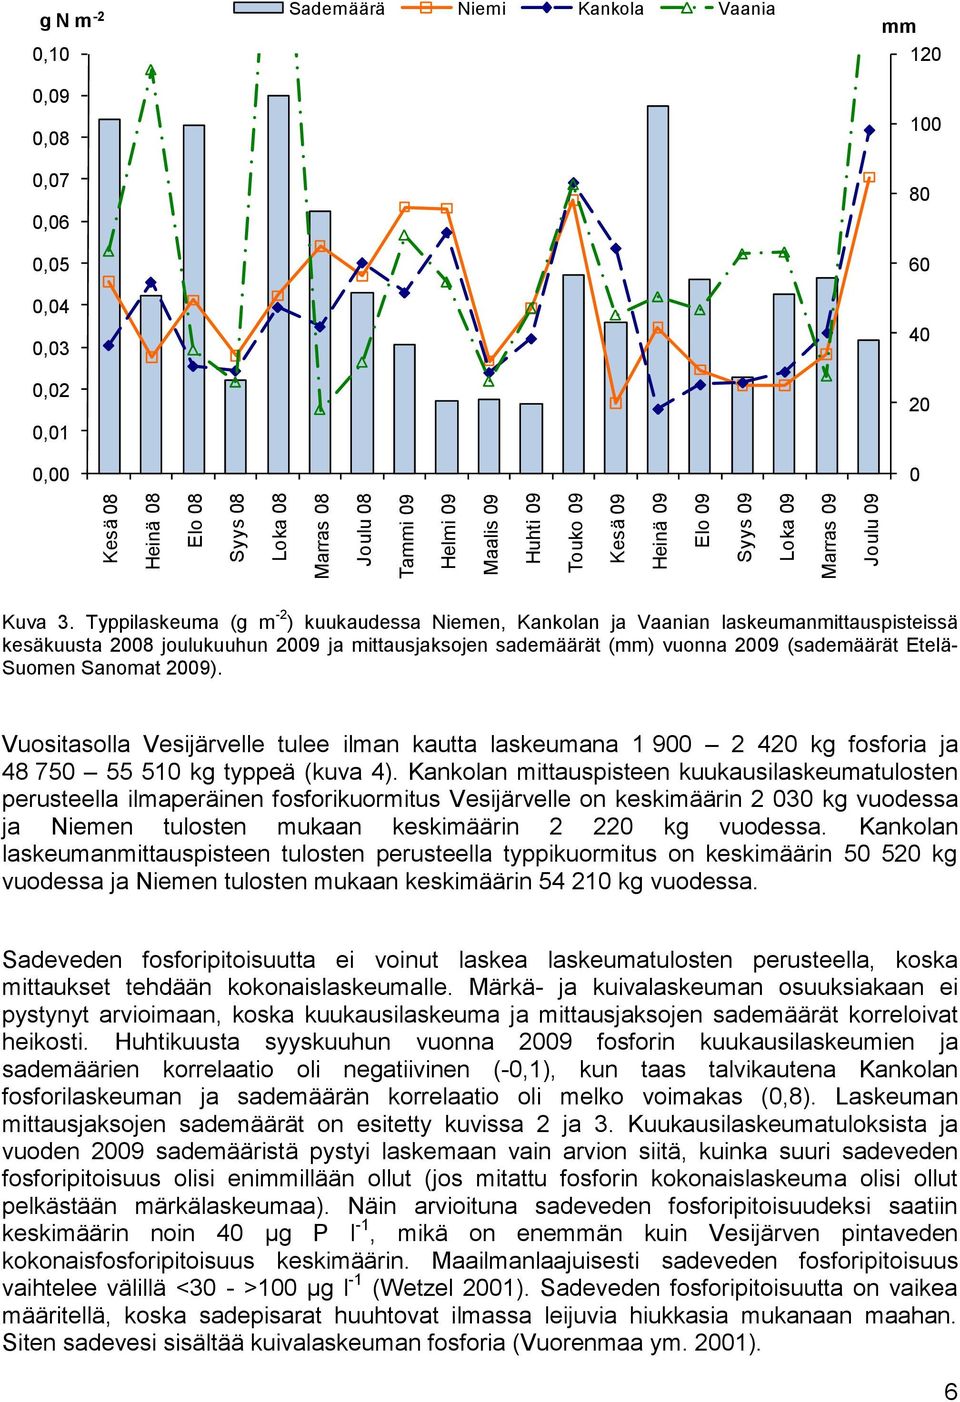 Typpilaskeuma (g m -2 ) kuukaudessa Niemen, Kankolan ja Vaanian laskeumanmittauspisteissä kesäkuusta 2008 joulukuuhun 2009 ja mittausjaksojen sademäärät (mm) vuonna 2009 (sademäärät Etelä- Suomen